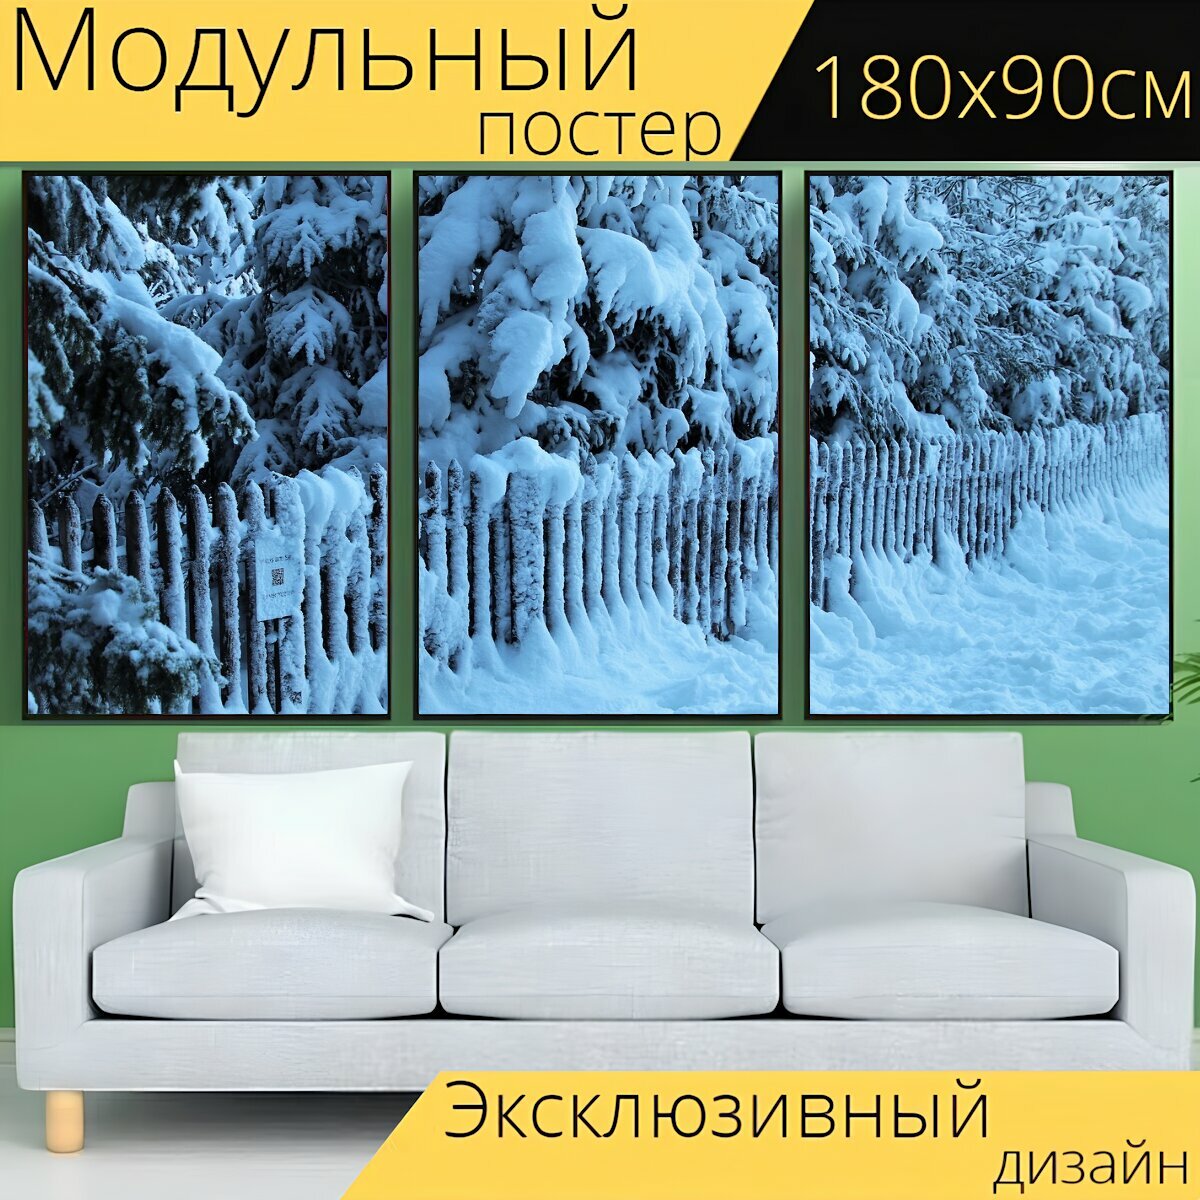 Модульный постер "Холодная, изгородь, снег" 180 x 90 см. для интерьера